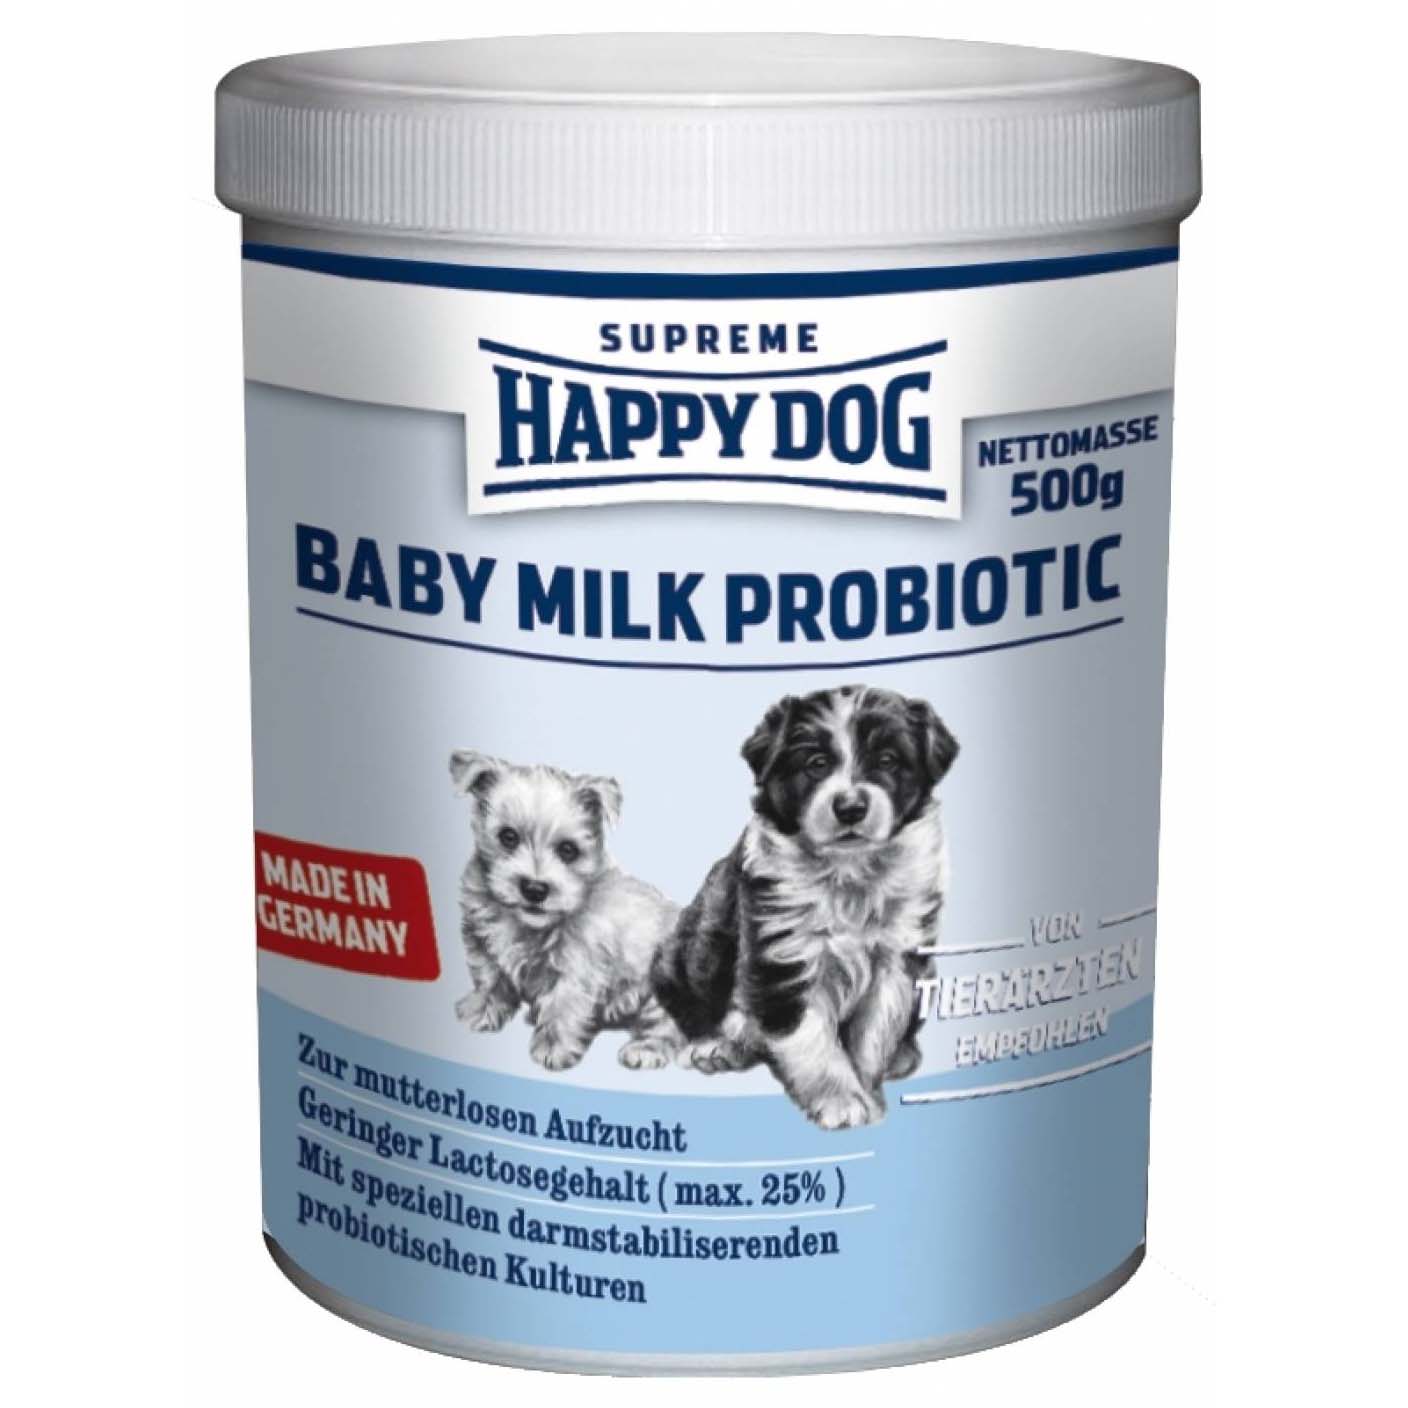 Happy dog supreme lapte pentru căţeluşi baby milk probiotic 500g